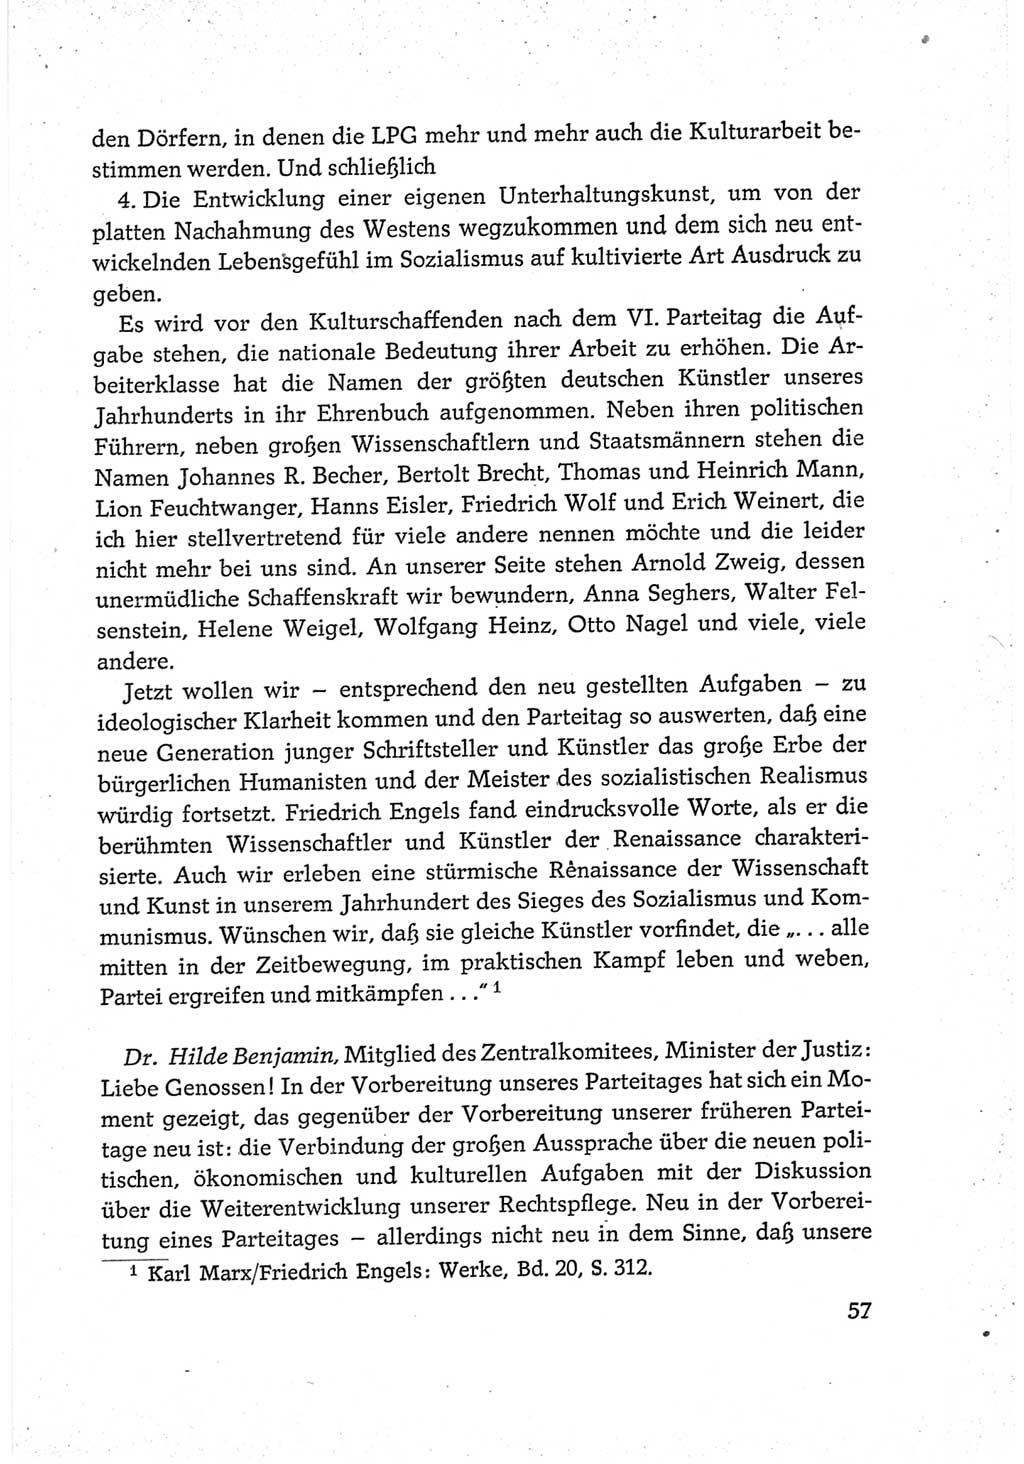 Protokoll der Verhandlungen des Ⅵ. Parteitages der Sozialistischen Einheitspartei Deutschlands (SED) [Deutsche Demokratische Republik (DDR)] 1963, Band Ⅲ, Seite 57 (Prot. Verh. Ⅵ. PT SED DDR 1963, Bd. Ⅲ, S. 57)